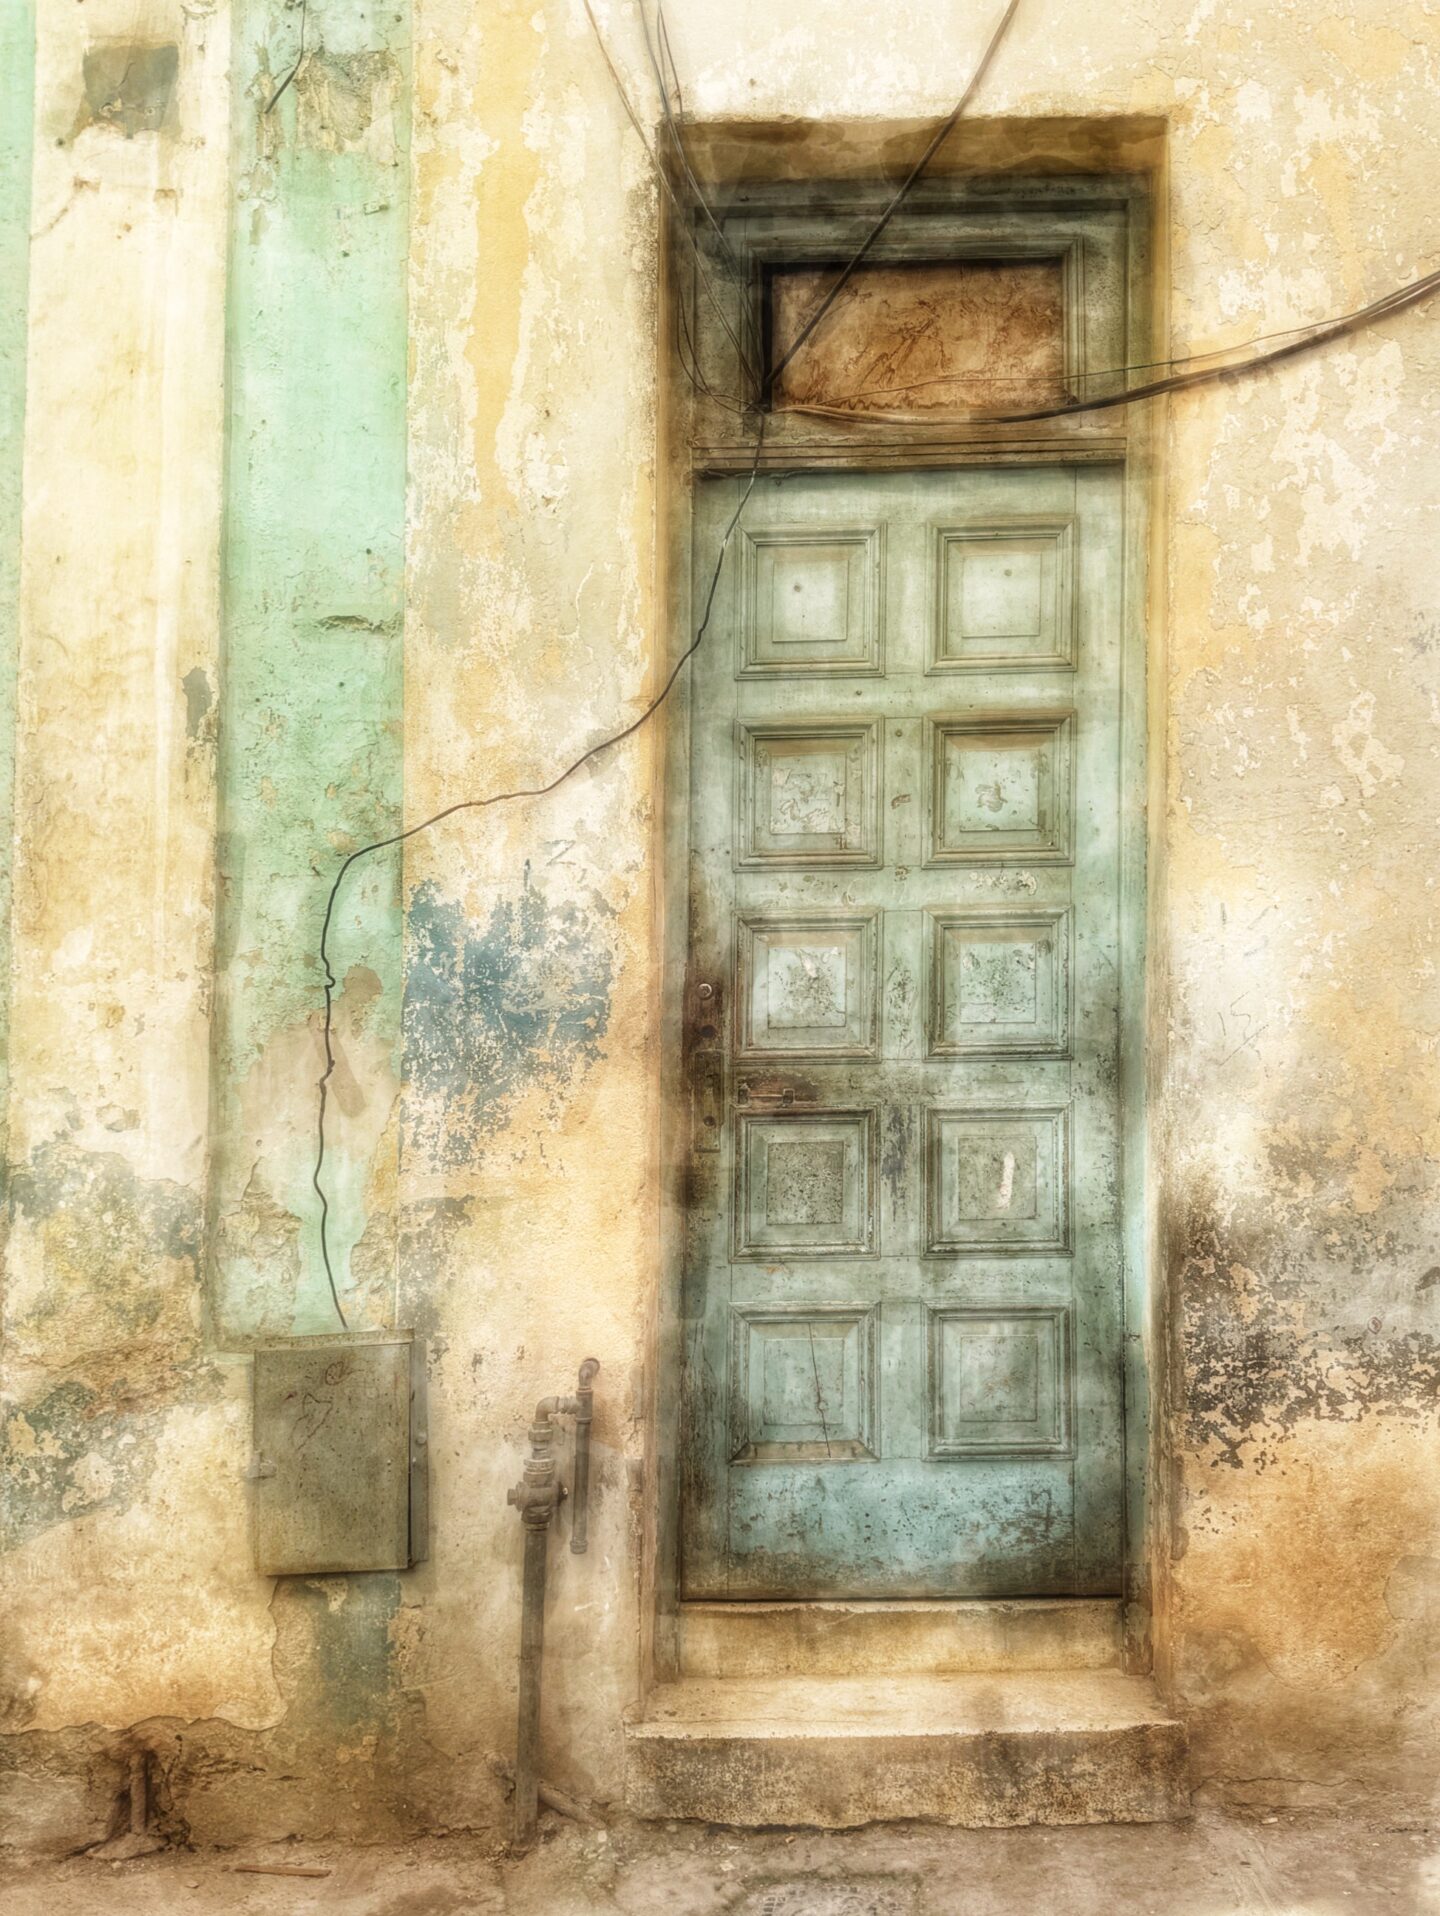 Painted door in green, doorway and wire from Old Havana, Cuba by Carol Schiraldi of Carol's Little World 